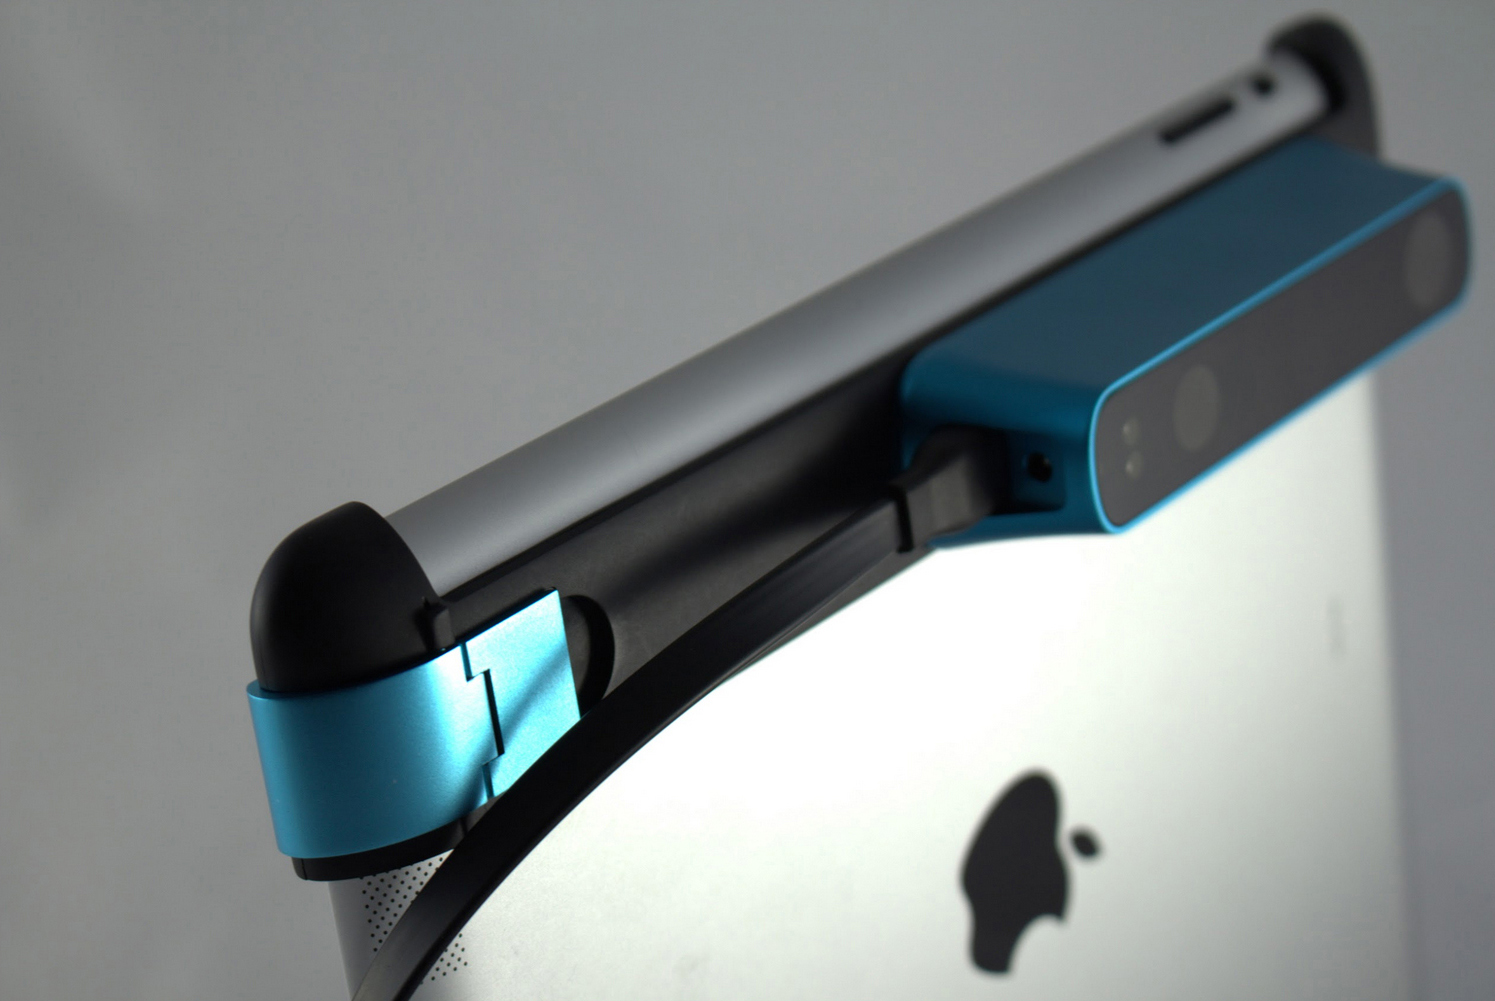 アメリカのベンチャー企業がiPadを3Dスキャナーにするアプリを開発